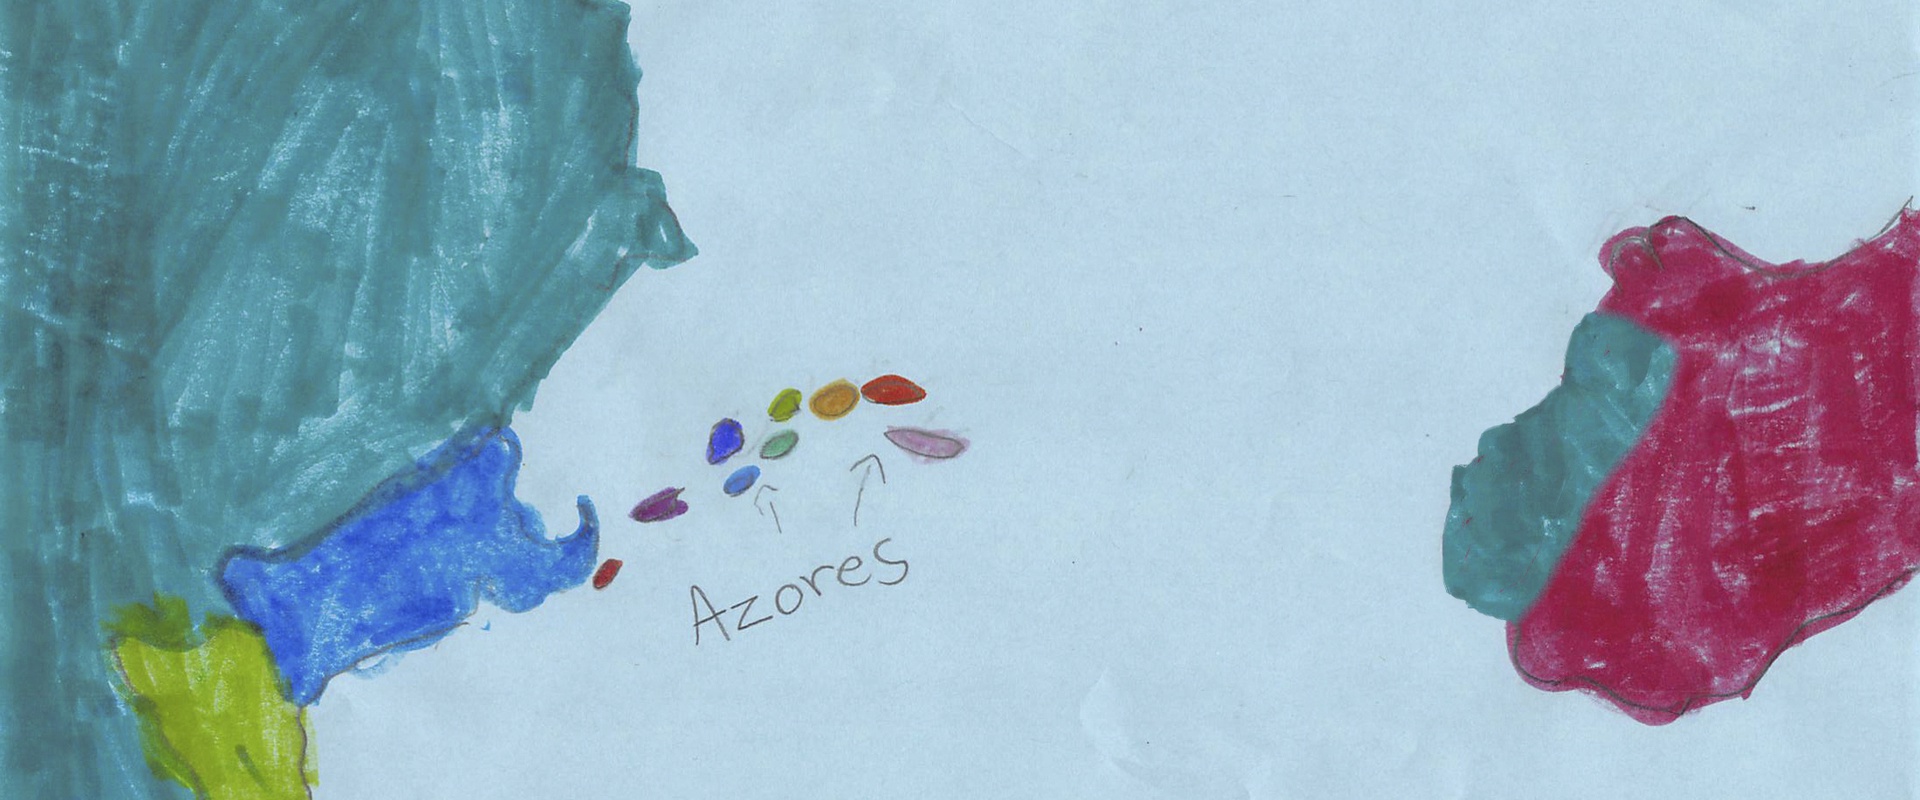 Delineando o meu Bairro: Os Açores sem limites.